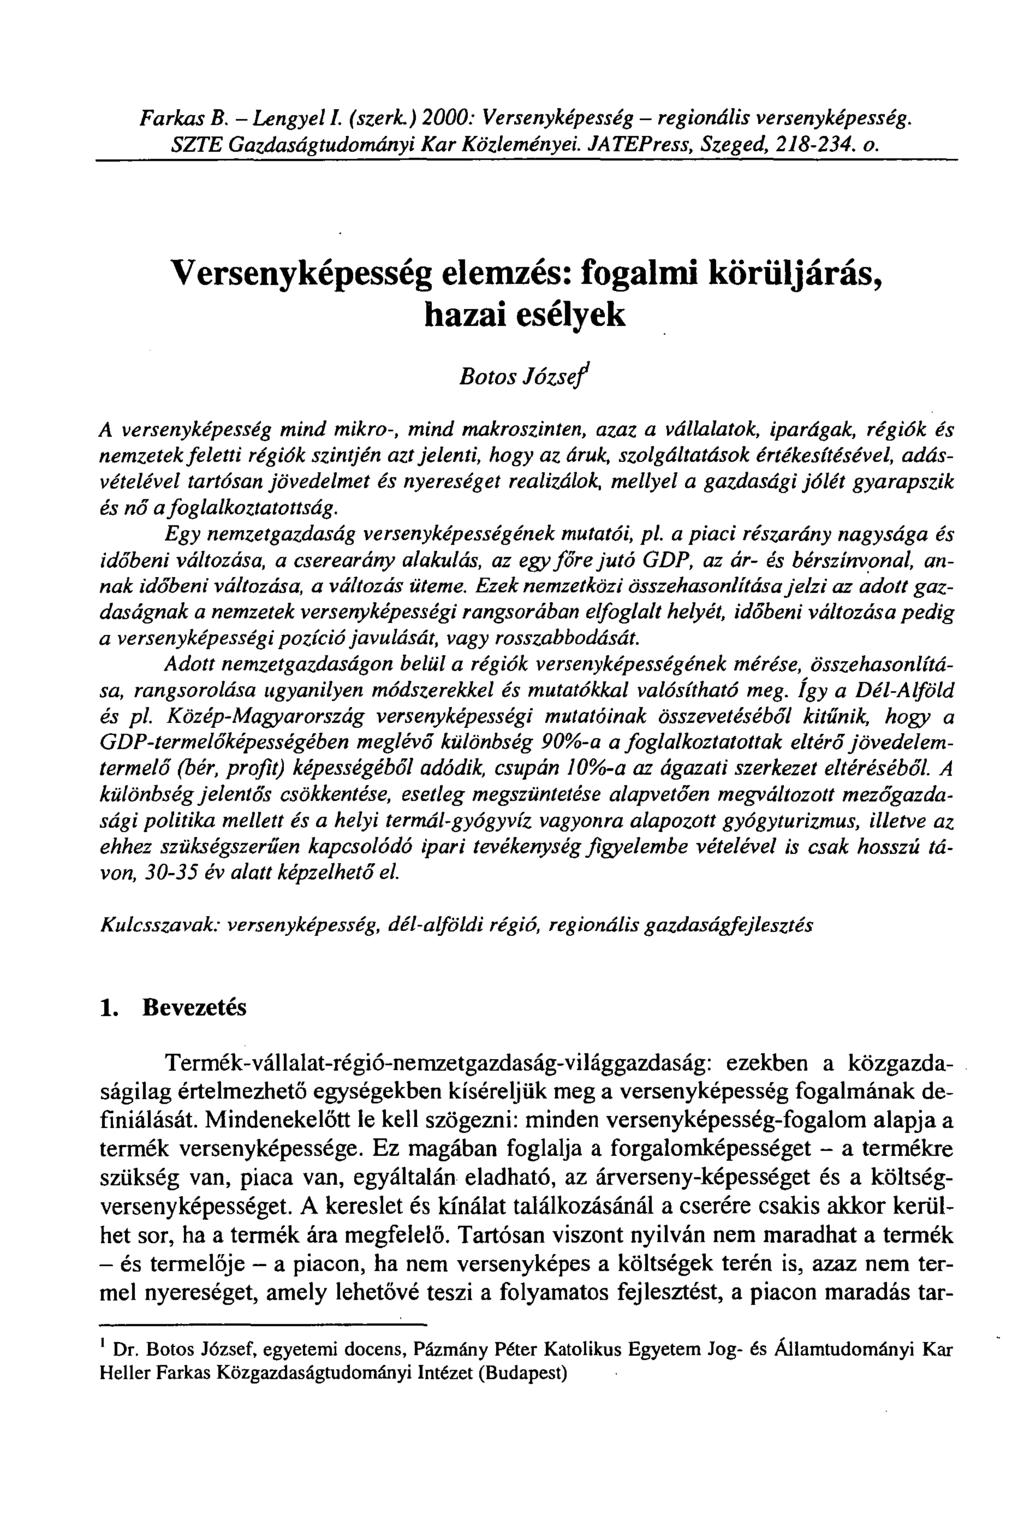 Farkas B. - Lengyel I. (szerk.) 2000: Versenyképesség - regionális versenyképesség. SZTE Gazdaságtudományi Kar Közleményei. JATEPress, Szeged, 218-202. o.